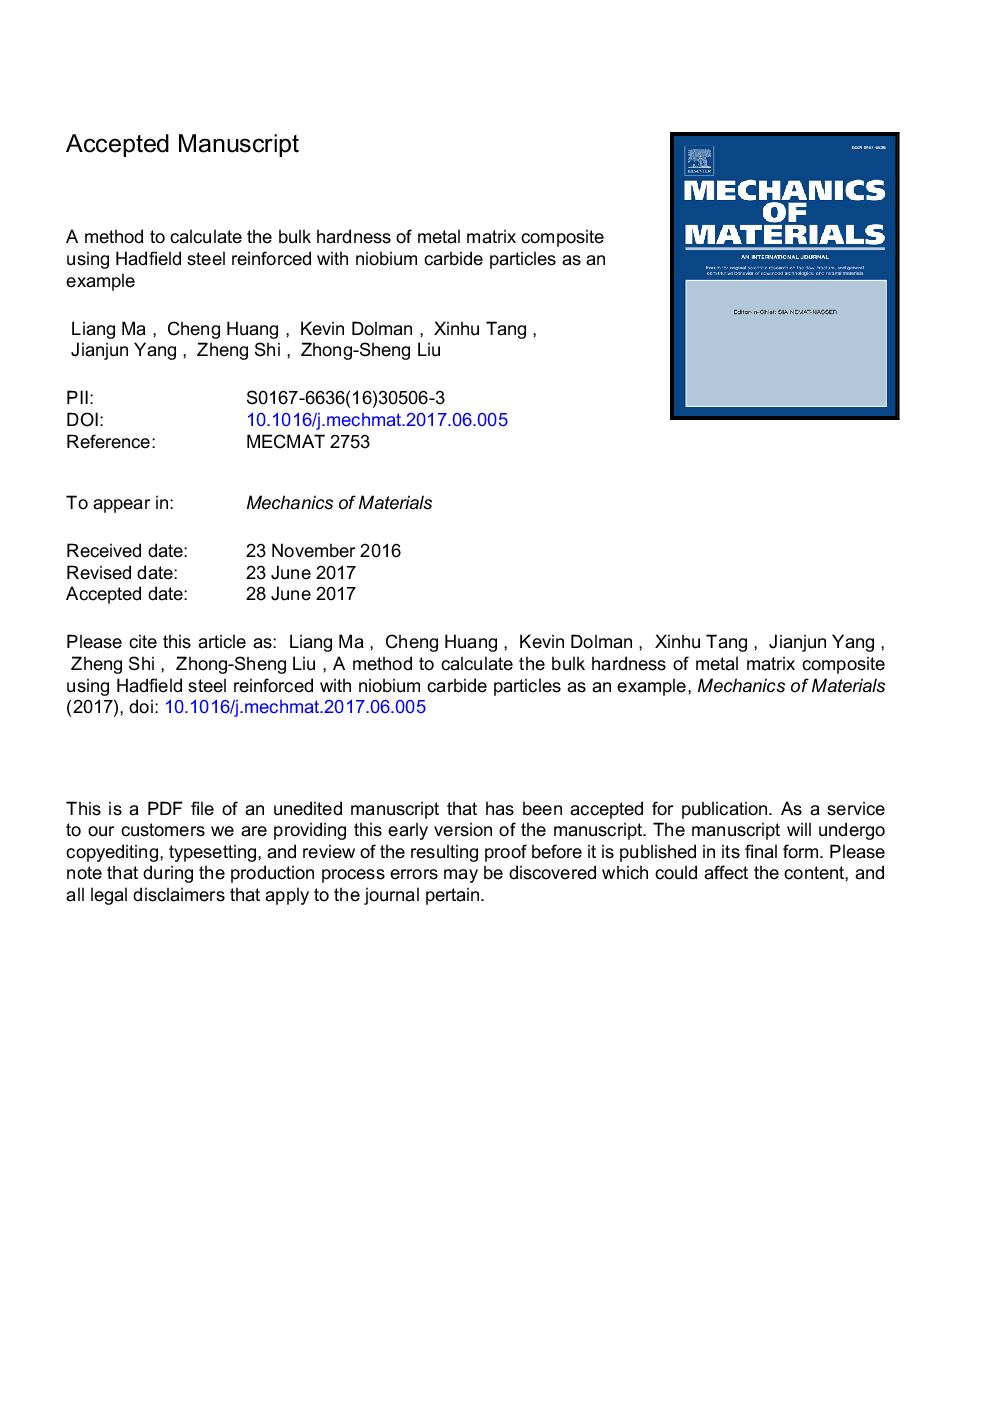 یک روش برای محاسبه سختی مرکب کامپوزیت ماتریس فلزی با استفاده از فولاد هادفیلد تقویت شده با ذرات کاربید نایوبیم به عنوان مثال 